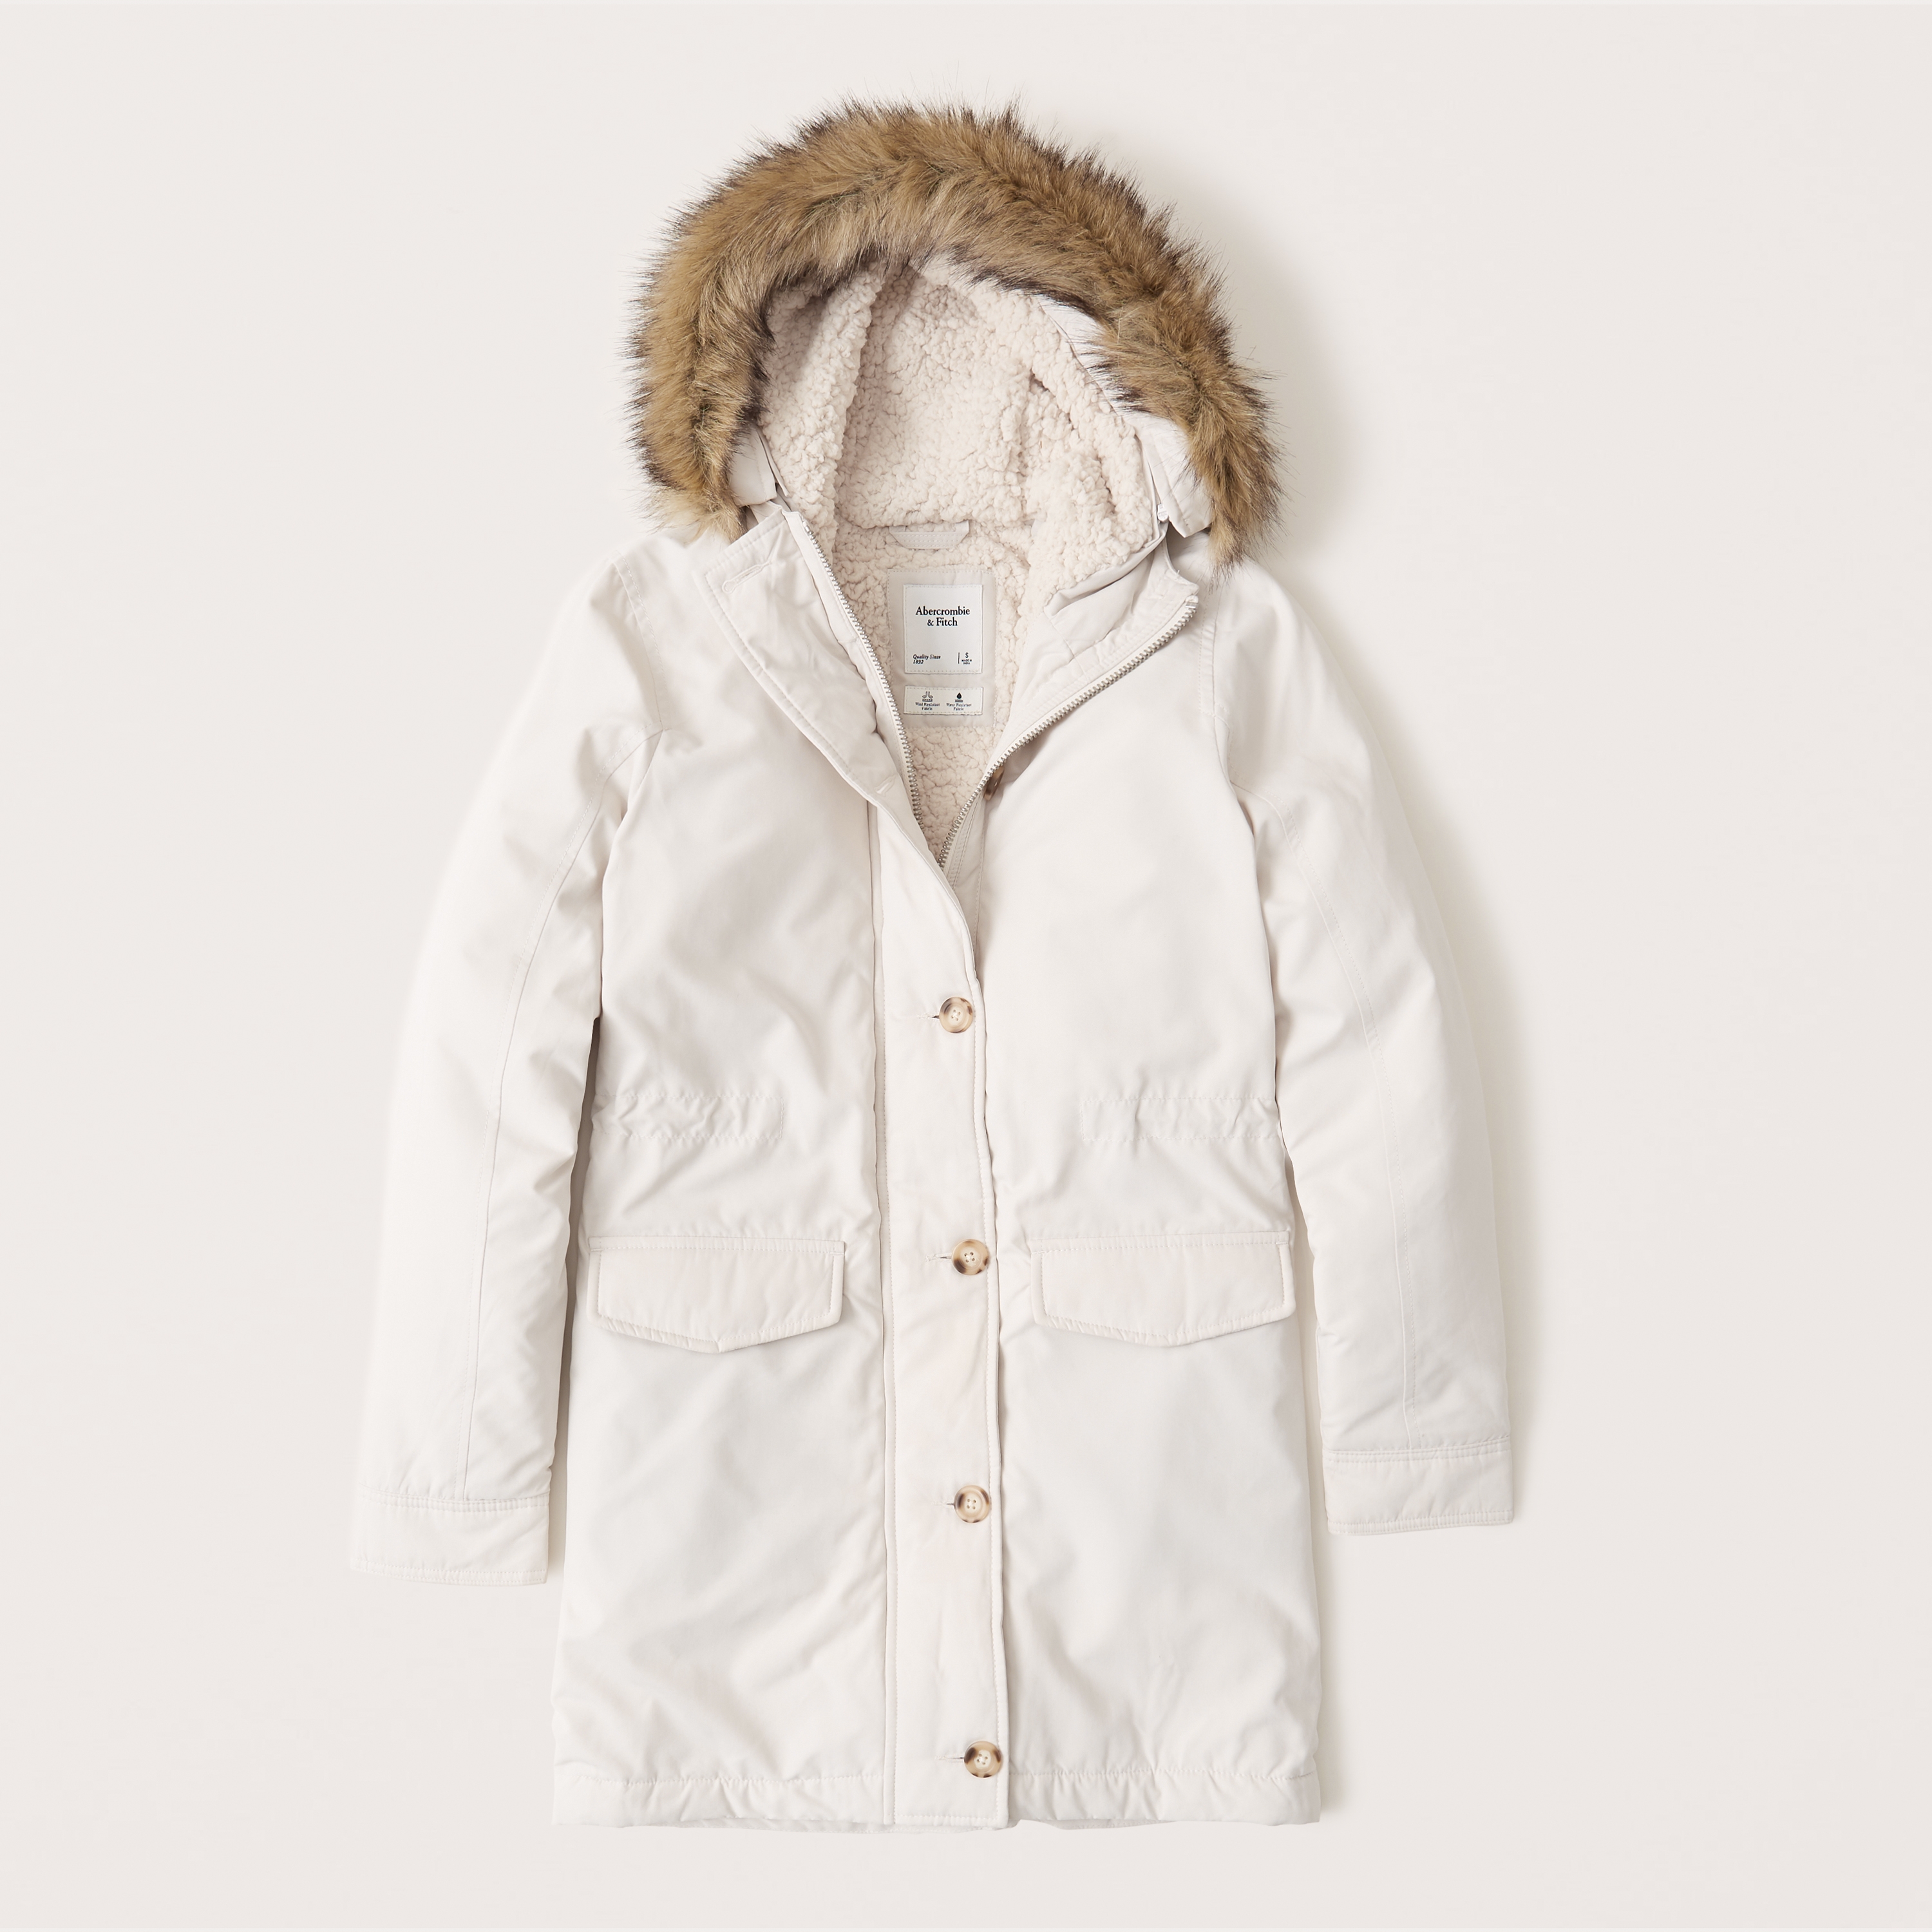 abercrombie winter coat